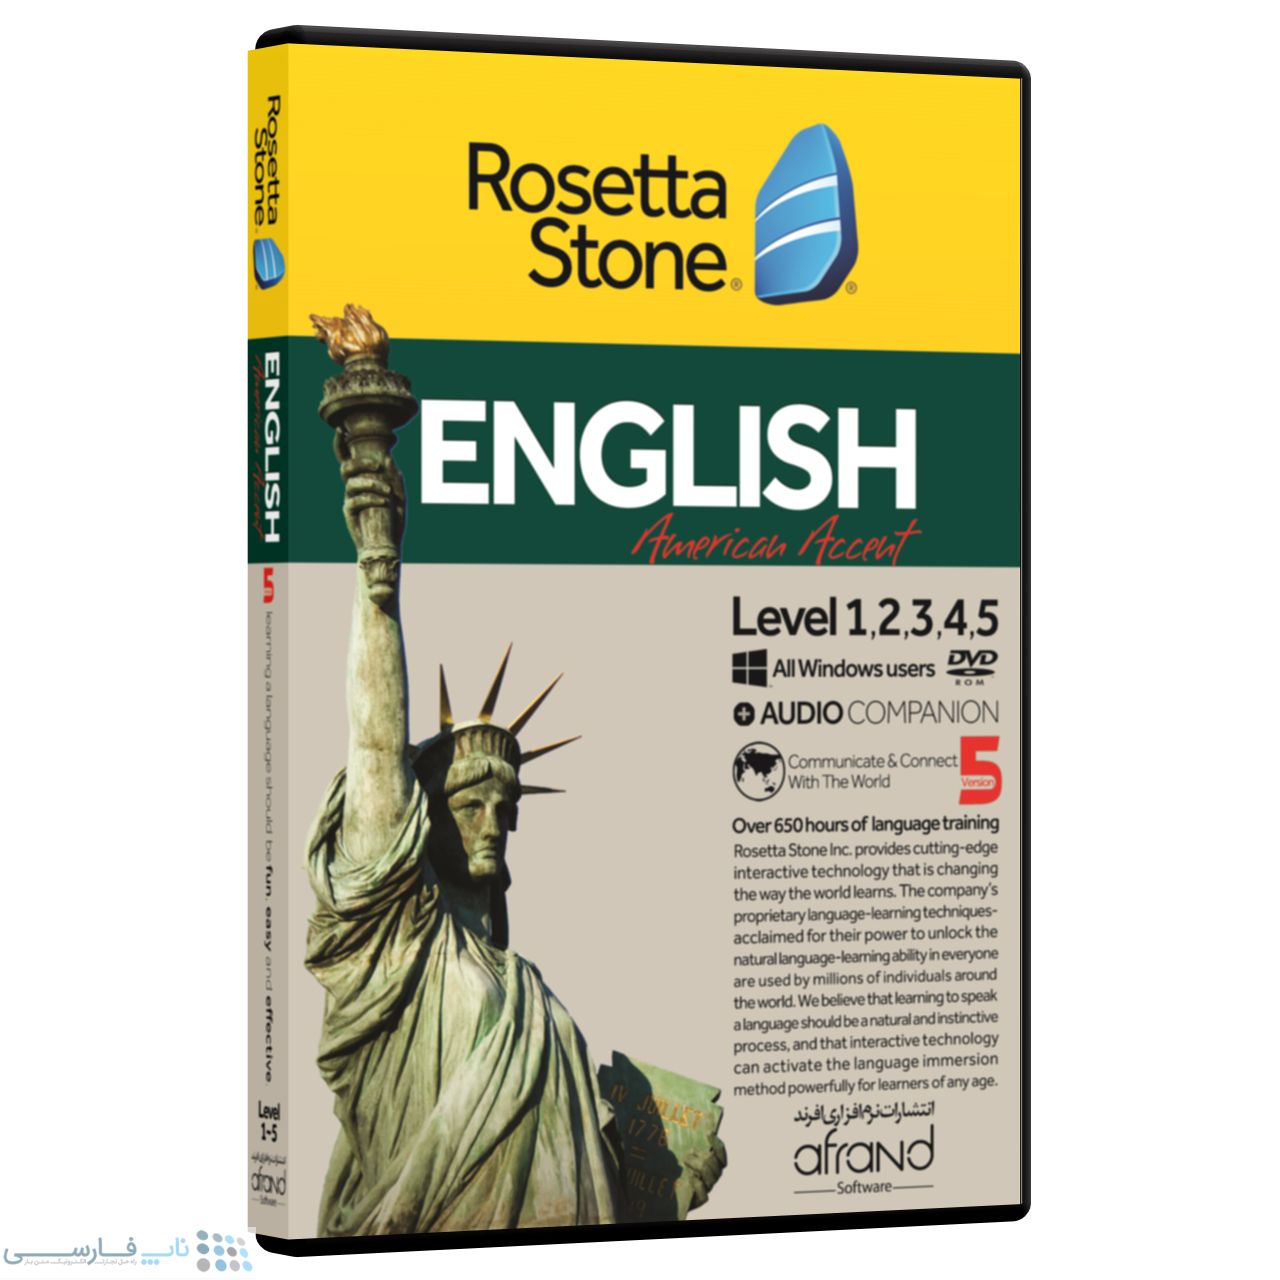 تصویر  نرم افزار آموزش زبان انگلیسی رزتااستون لهجه آمریکایی نسخه 5 انتشارات نرم افزاری افرند